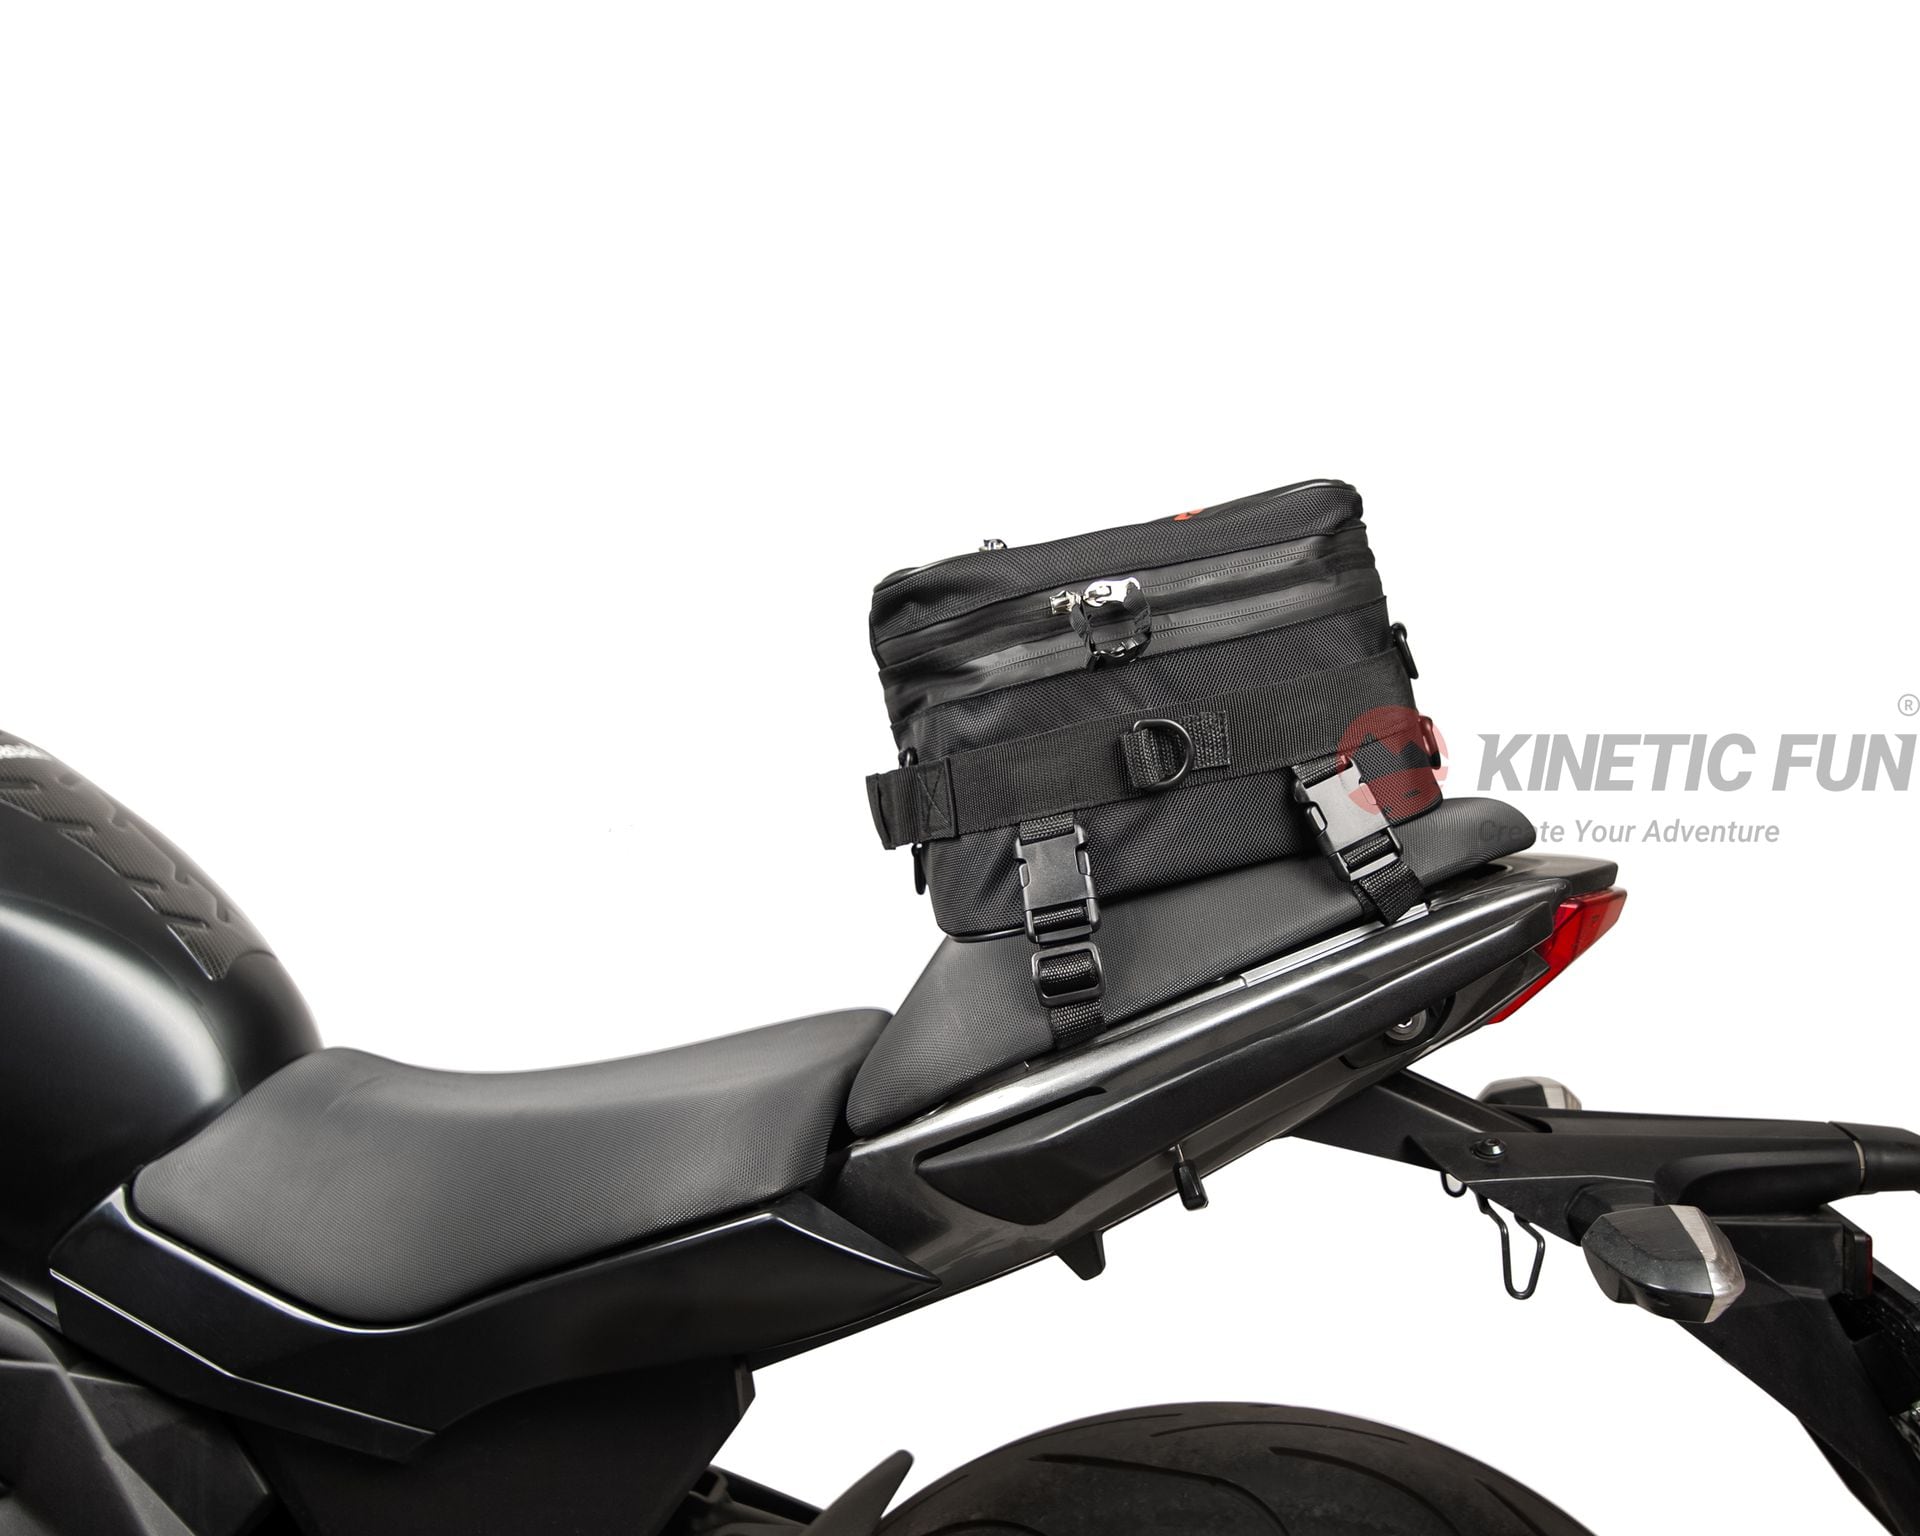 Сумка для мотоцикла Aprilia TUONO 125 (EURO 4) - седельная Sportbike, объём 8-12 литров